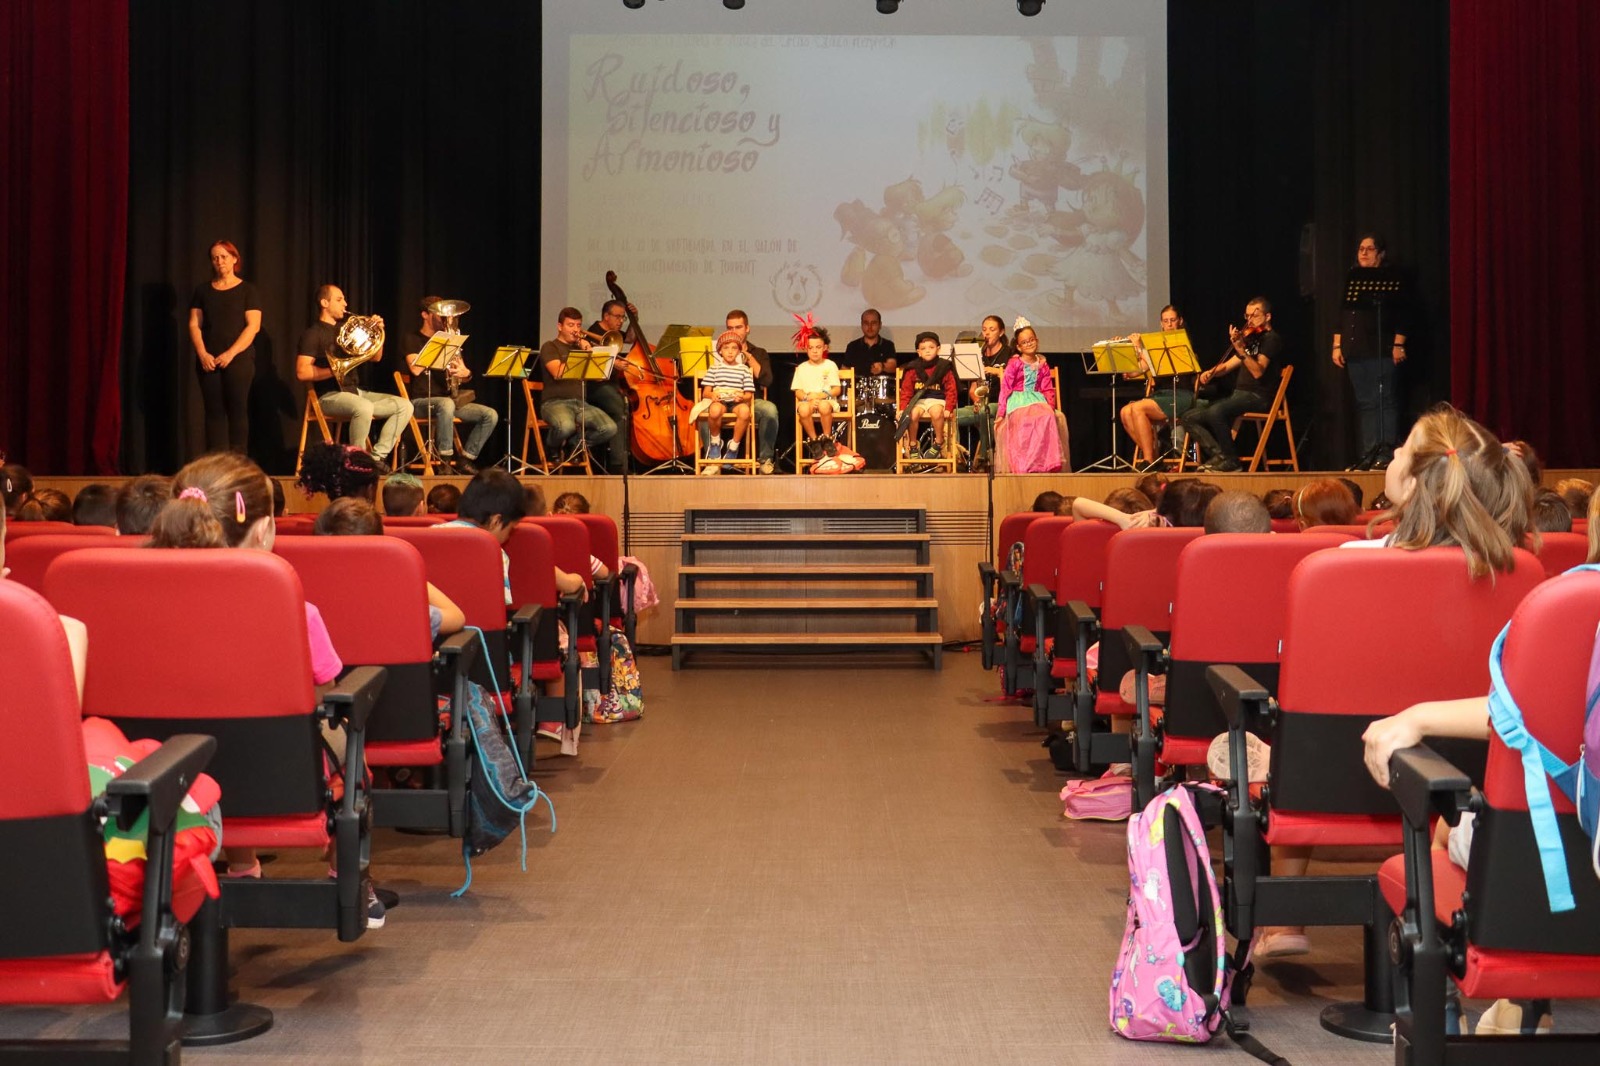 Més de 700 estudiants de Torrent gaudeixen dels concerts didàctics ‘Ruidoso, silencioso y armonioso’